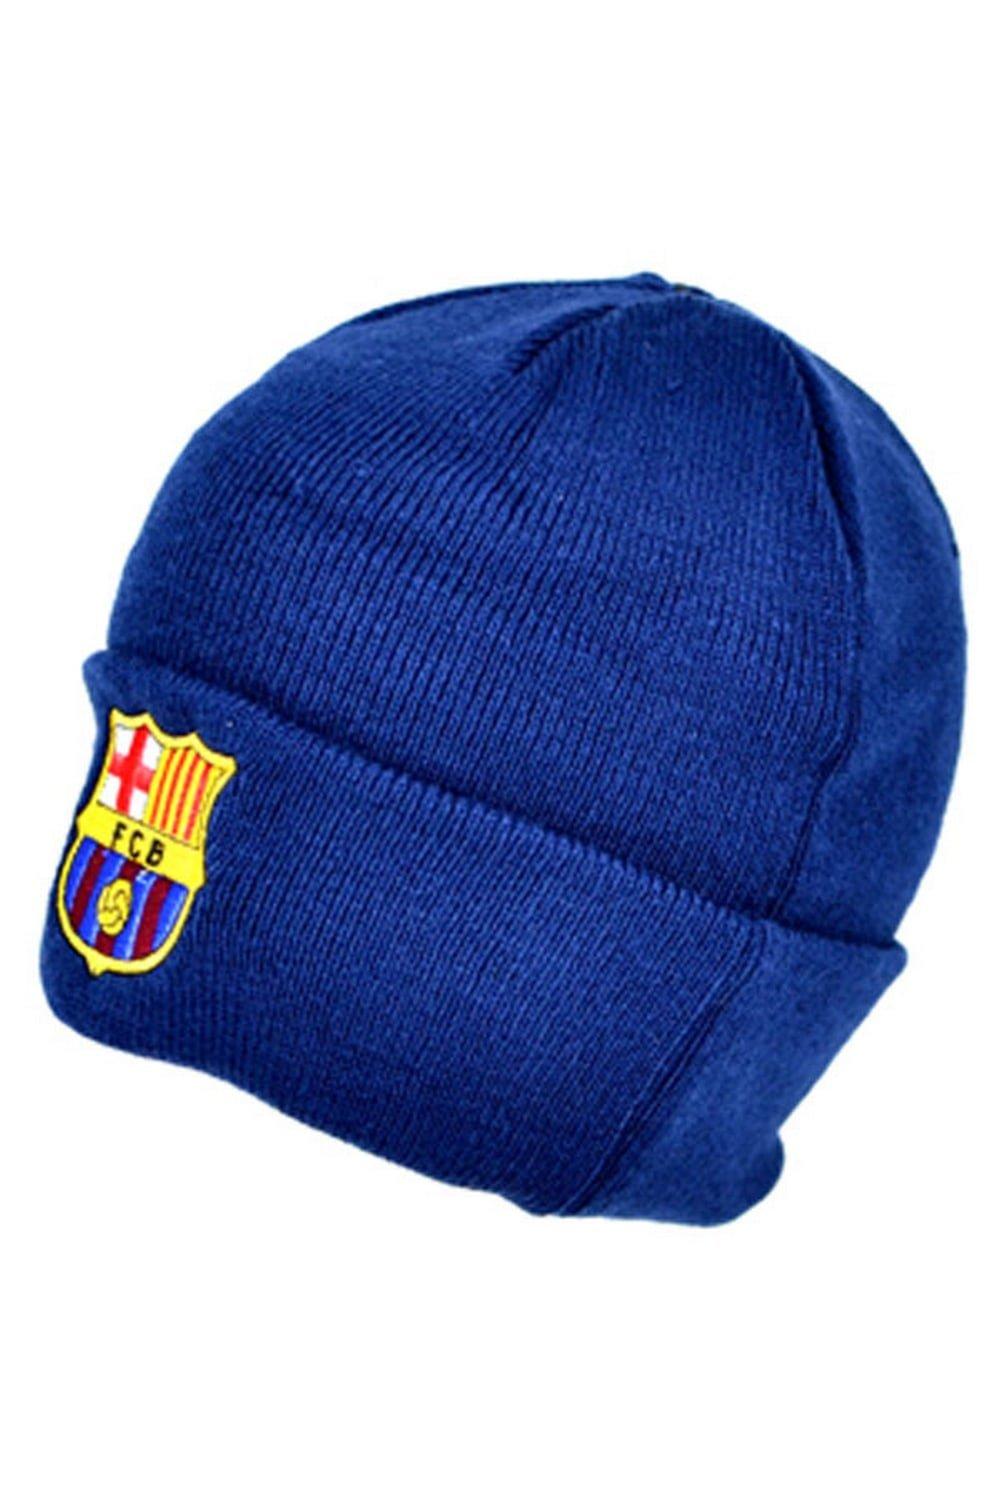 Официальная вязаная зимняя шапка-бини с футбольным гербом FC Barcelona, темно-синий геймпад rainbo dualshock 4 фк барселона